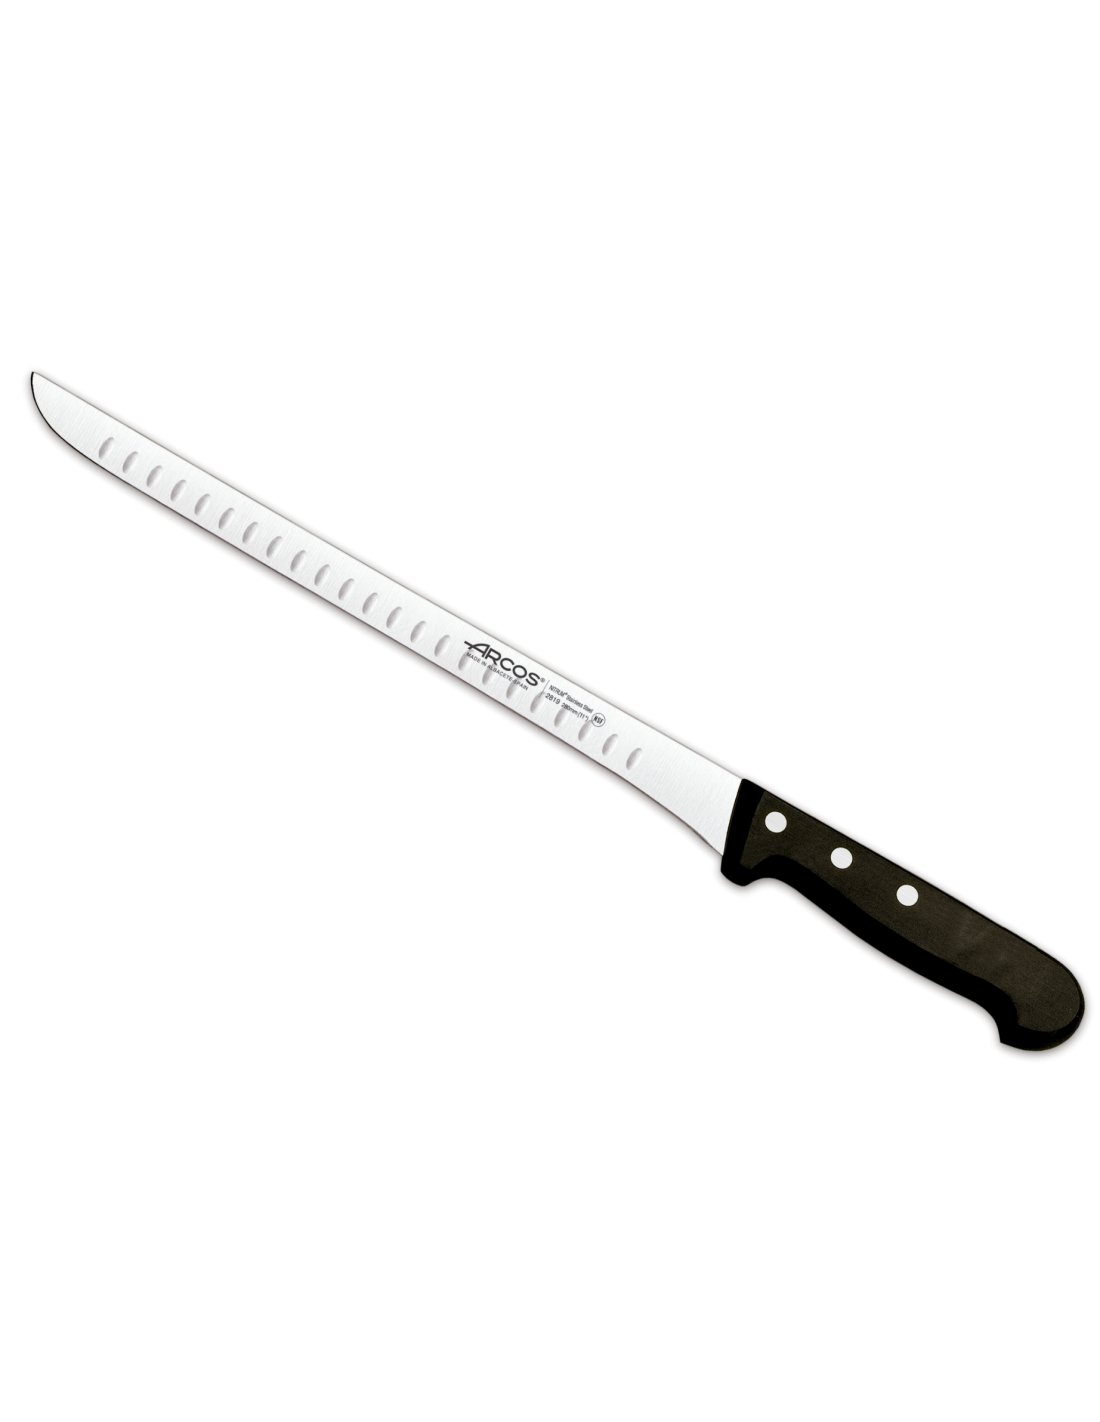 CUCHILLO JAMONERO ÓPERA 300 mm - Cuchillo largo, delgado, con hoja flexible  y filo liso. Especial para cortar jamón y otras piezas grandes de carne.